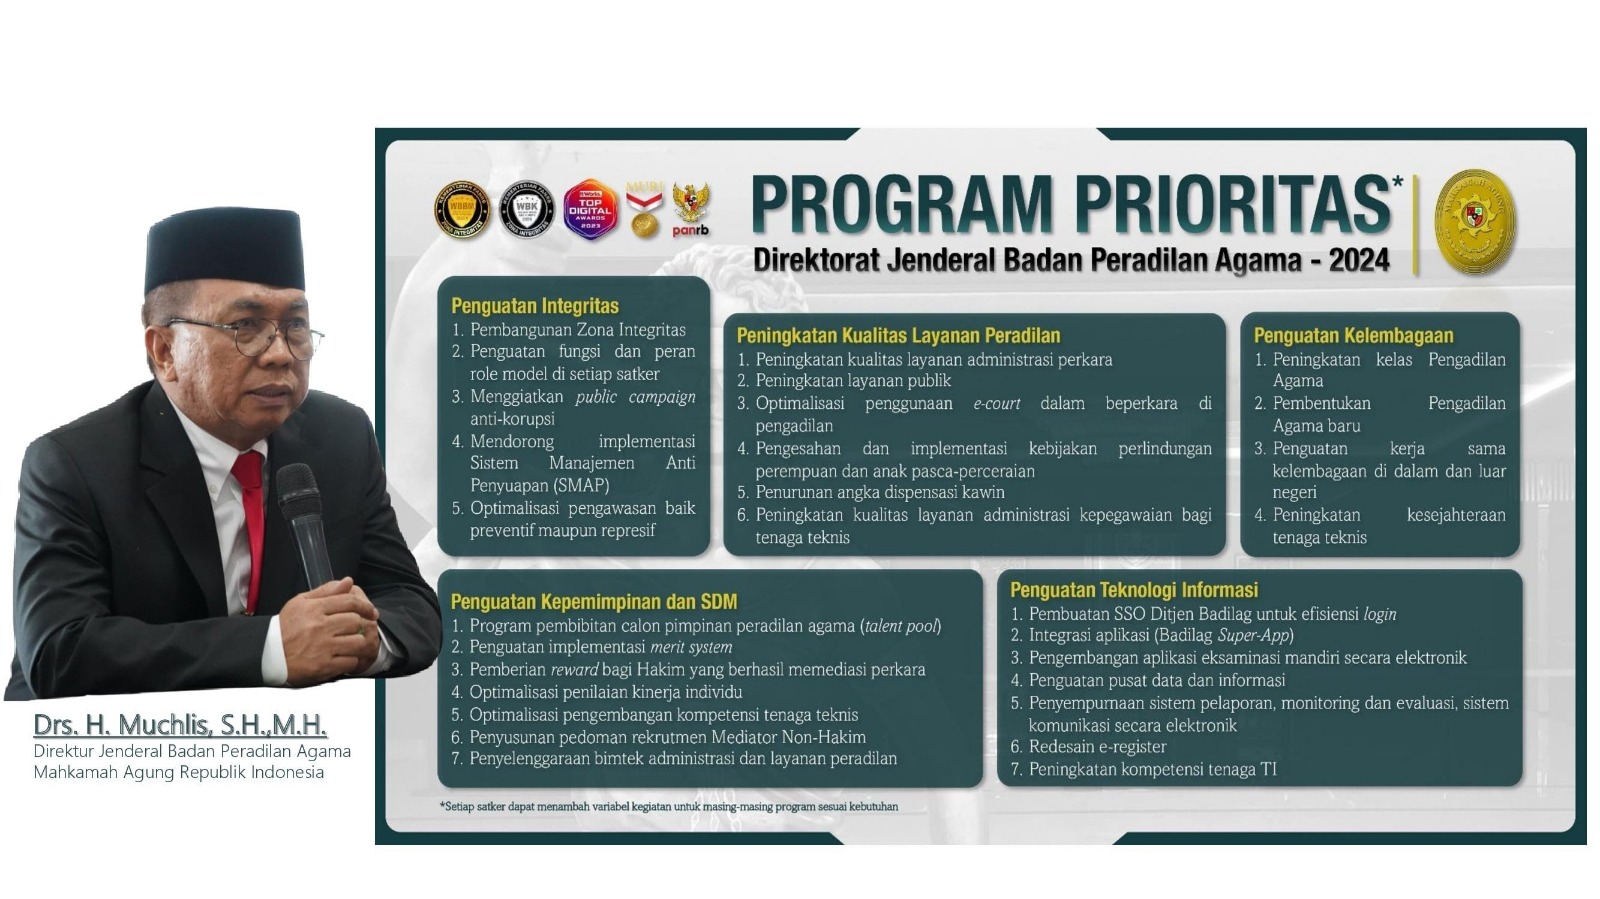 PTA Palangkaraya Siap Sukseskan Program Prioritas Ditjen Badilag